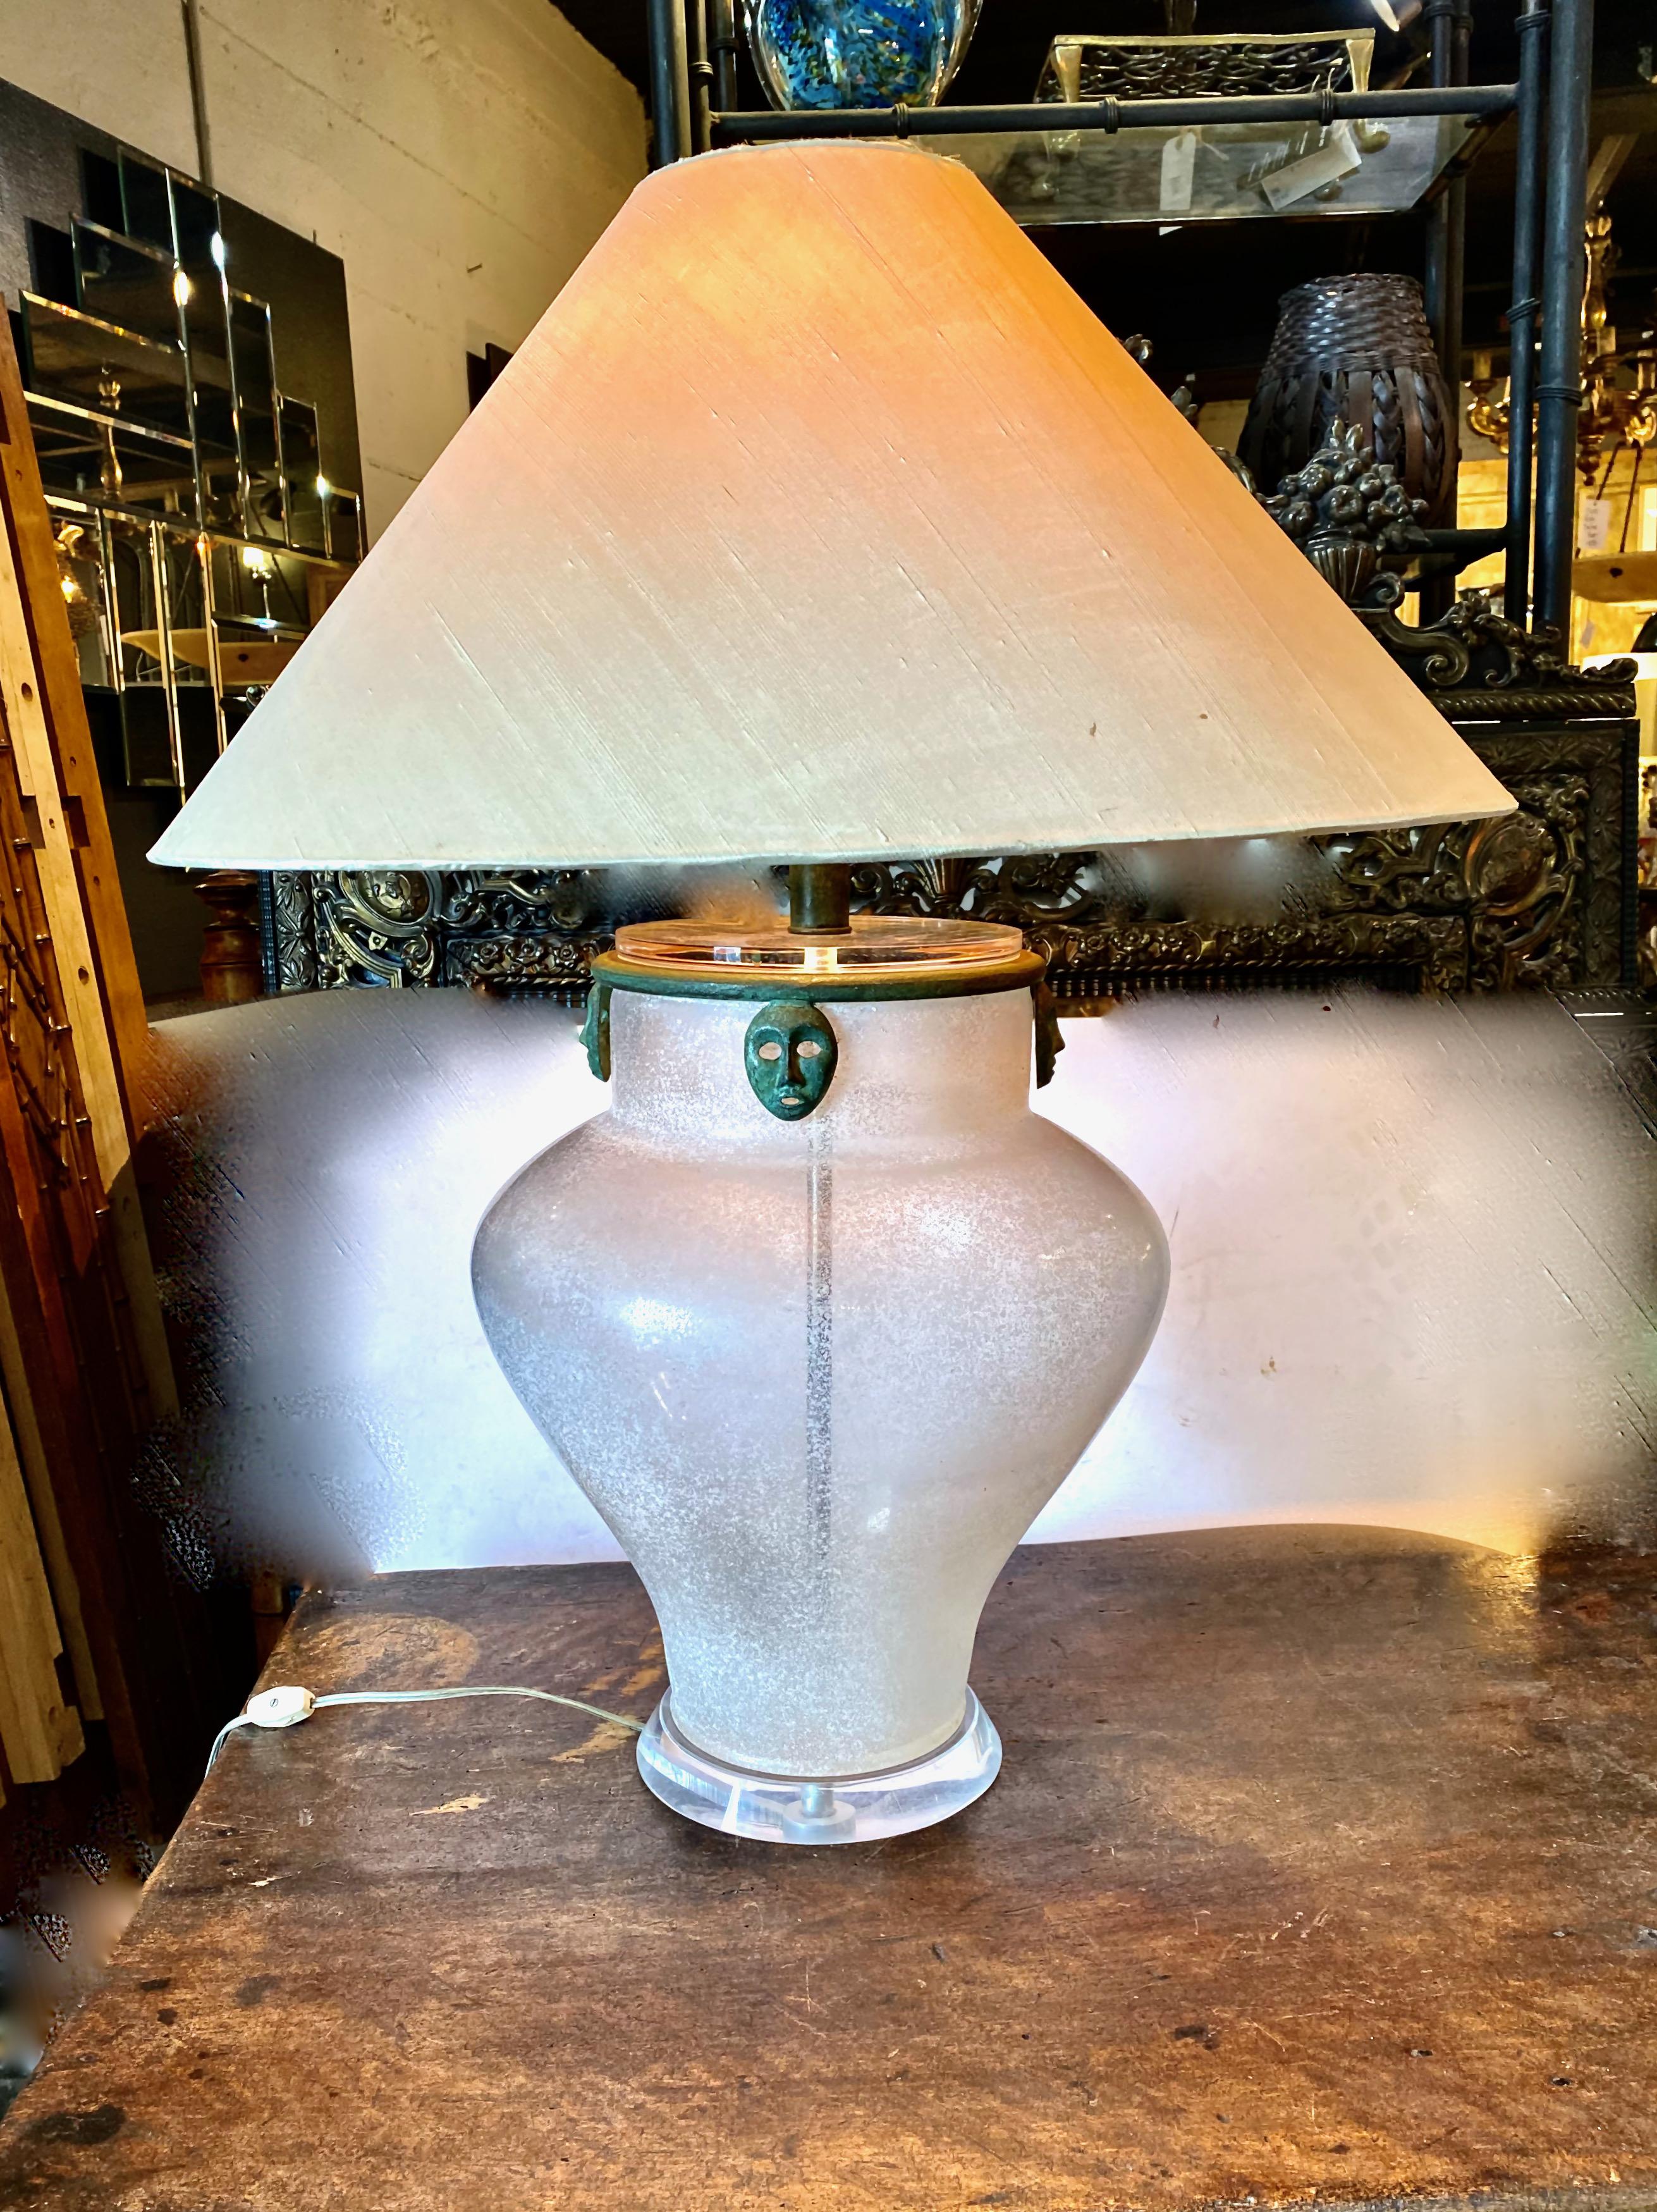 Voici un magnifique exemple de vase Scavo Corroso* de la fin du 20e siècle, attribué à Seguso/Karl Springer, qui a été magnifiquement détaillé avec un collier en bronze avec des masques en bronze de style archaïque suspendus. Le vase a été percé et